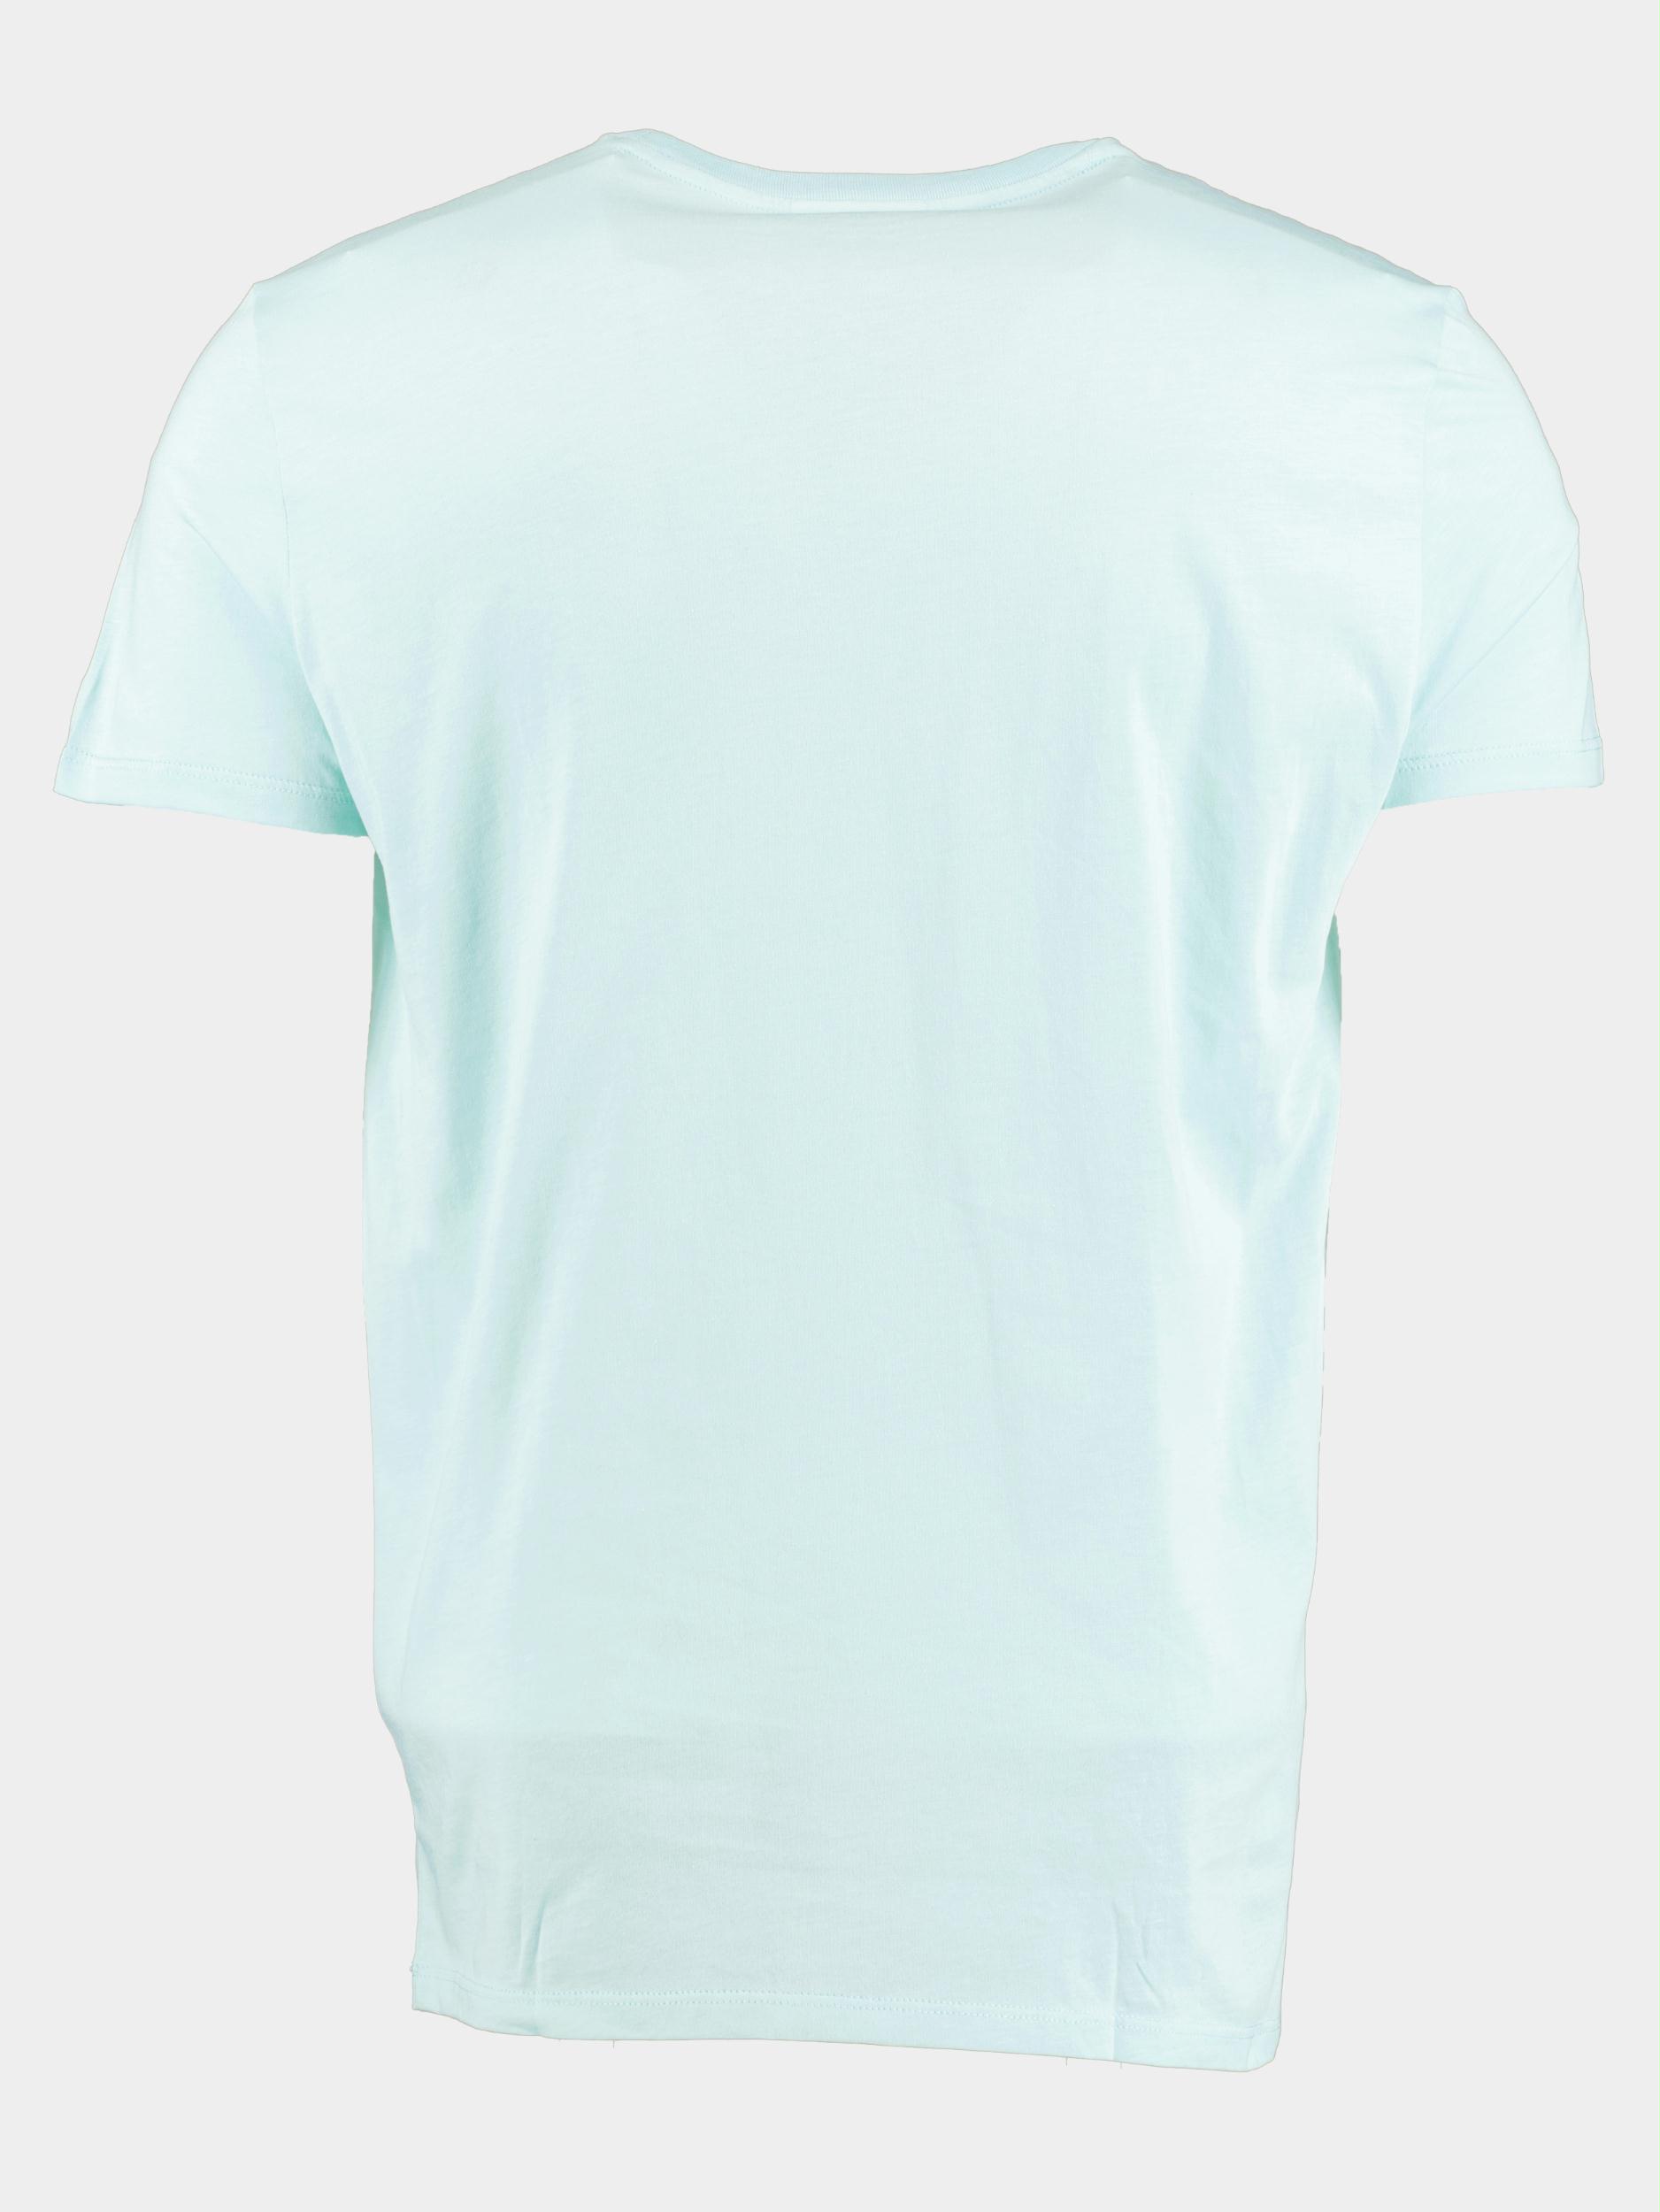 Lacoste T-shirt korte mouw Groen  TH6709/LGF